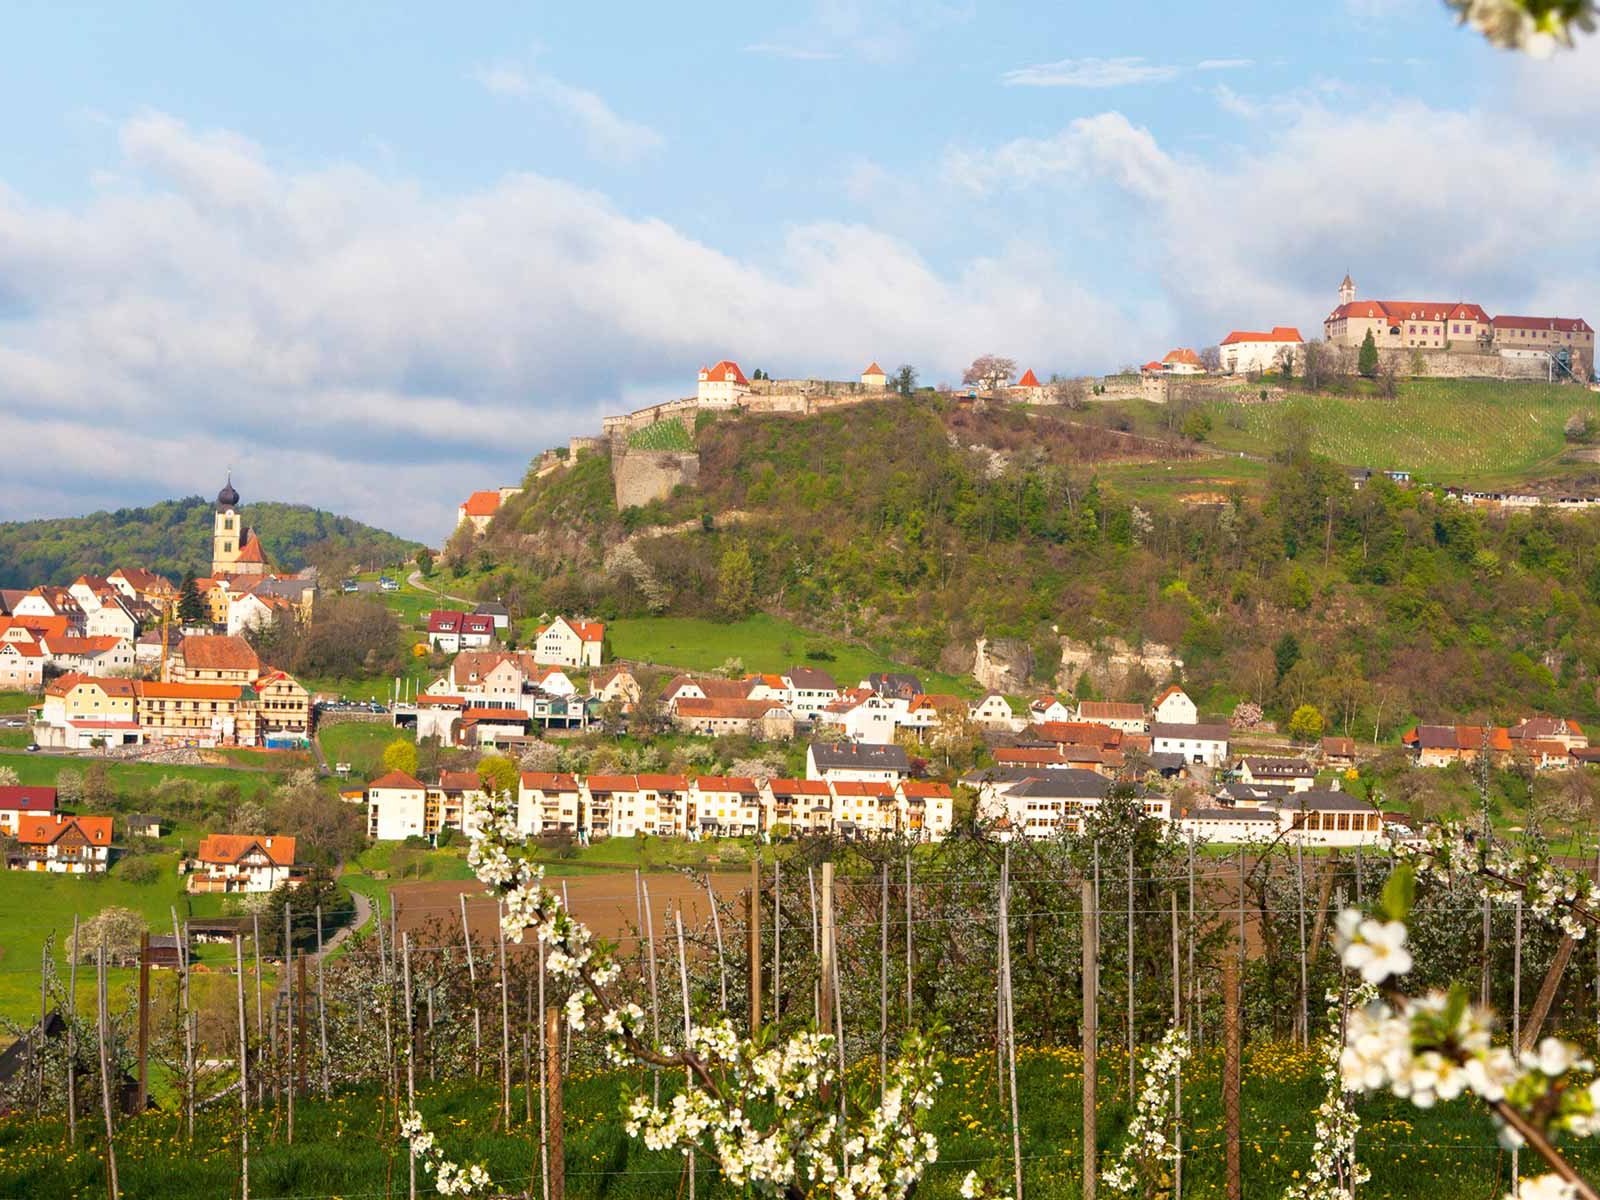 Die Riegersburg ist nicht nur eine der schönsten Burgen des Landes, sie ist in luftiger Höhe auch von mehreren Hektar Weingärten umgeben.